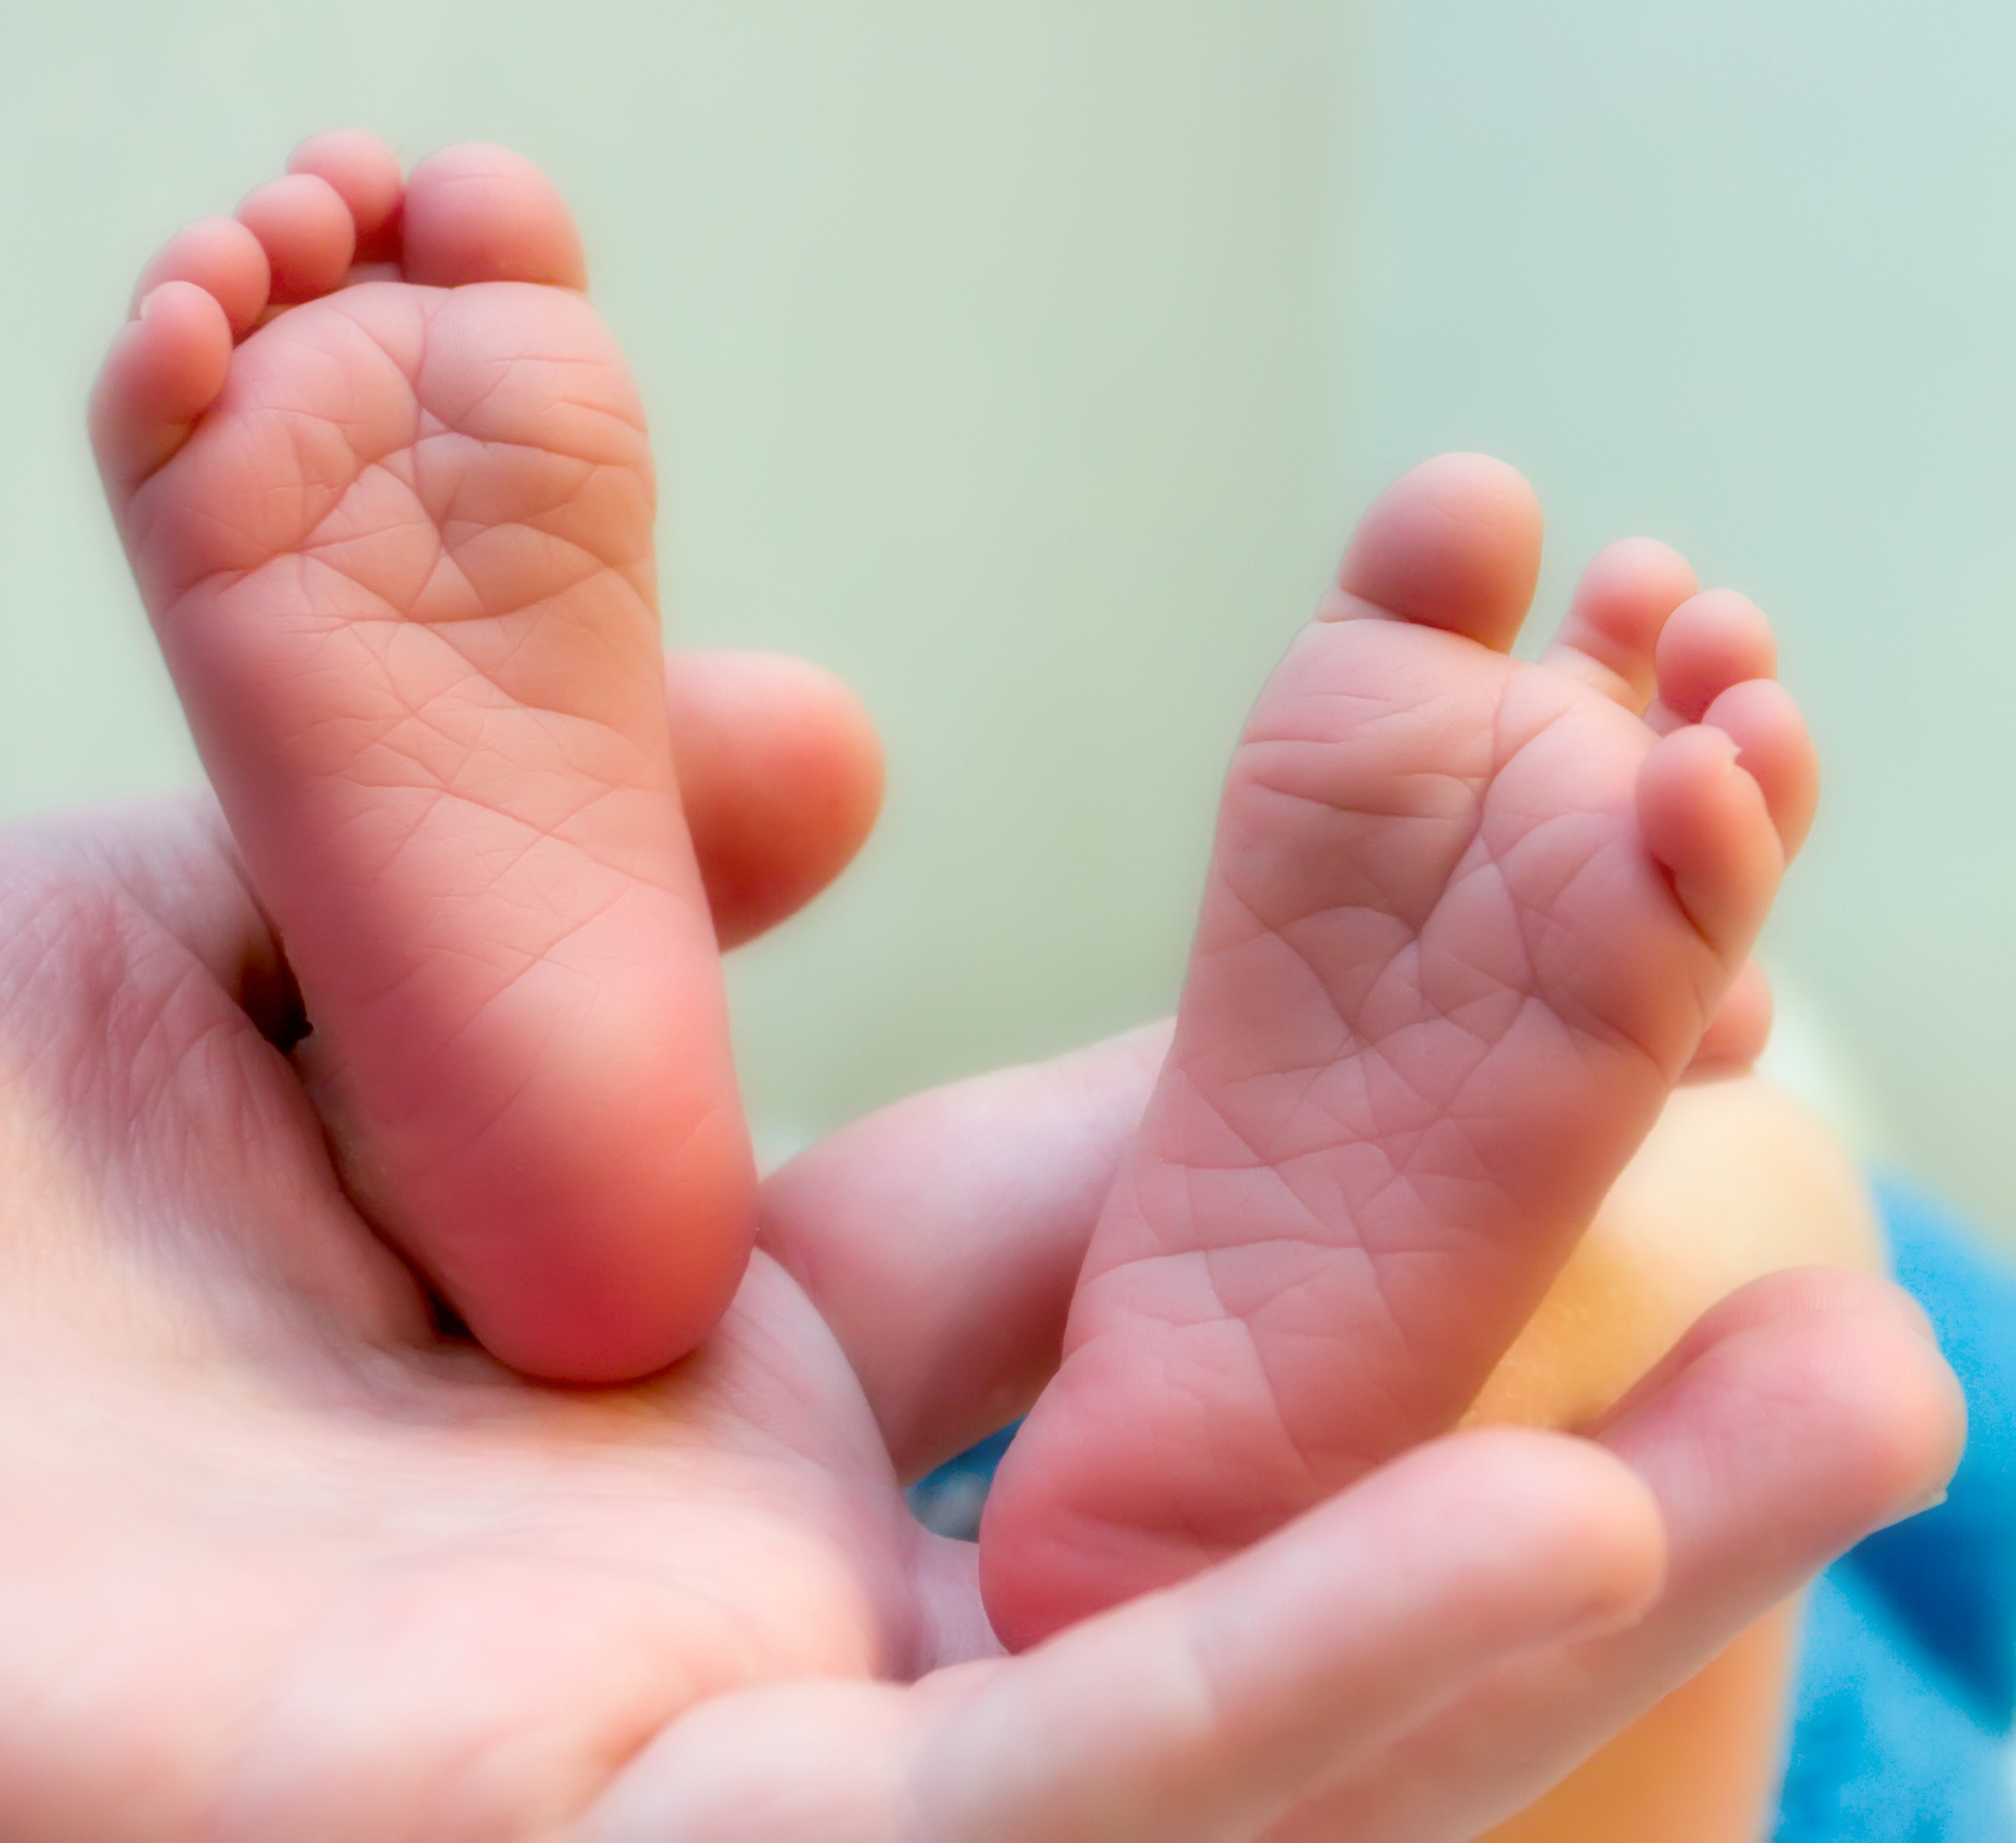 Baby Feet - shutterstock_12557218